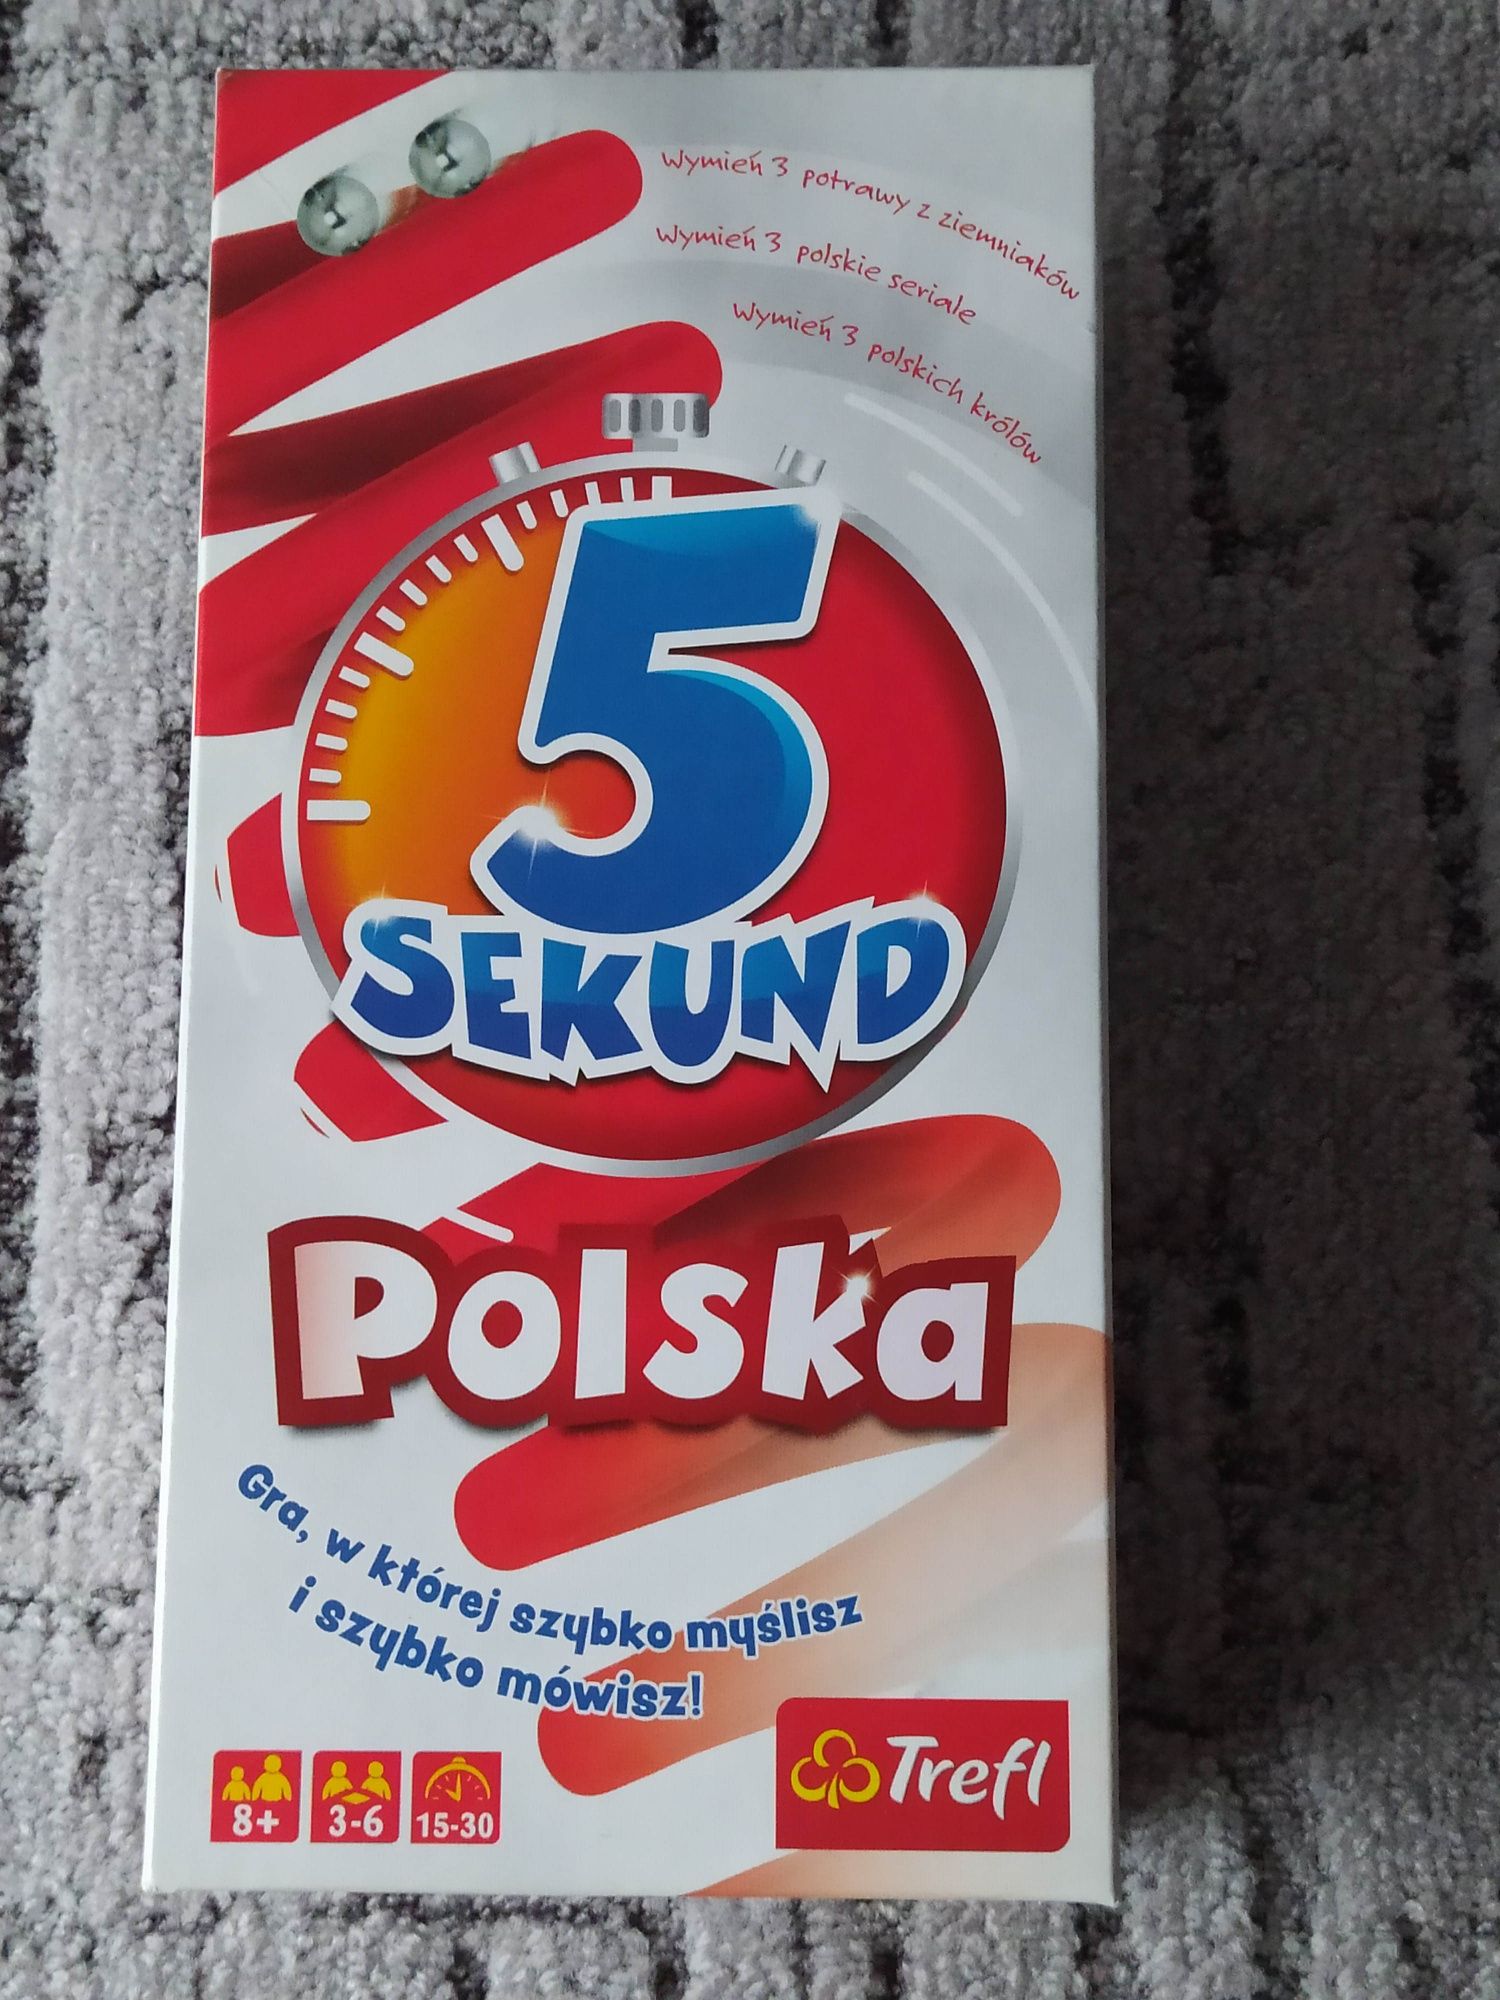 Trefl 5 Sekund Polska